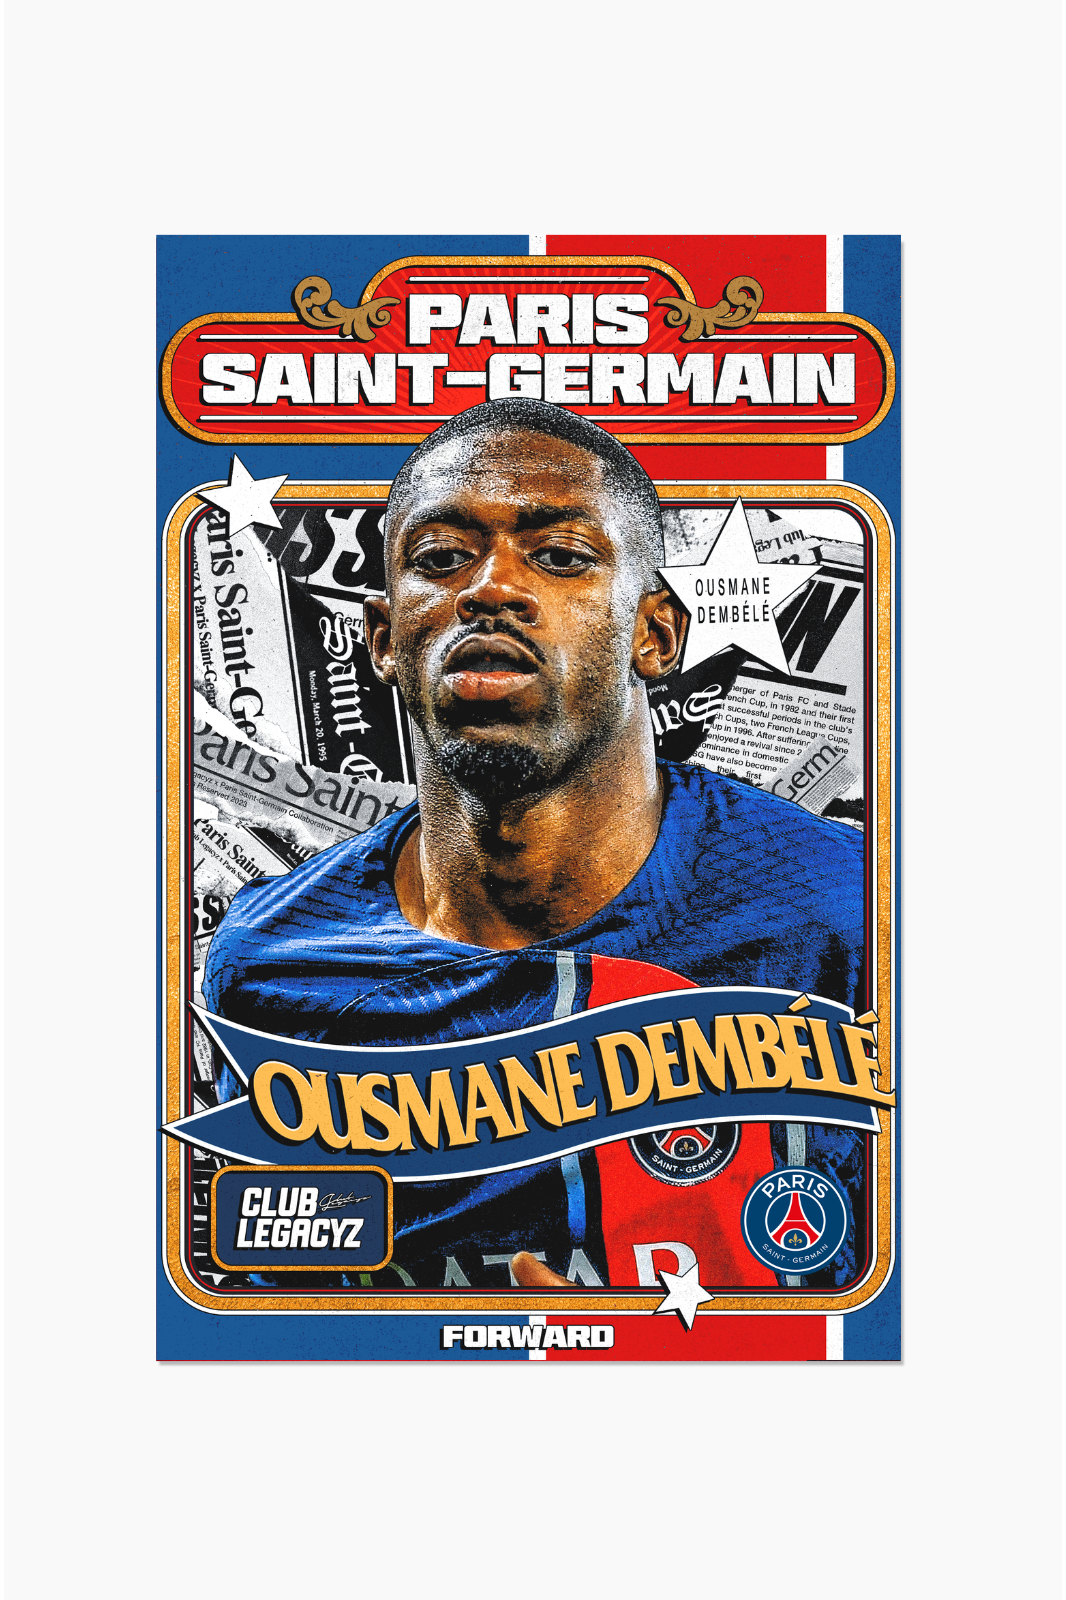 Paris Saint-Germain - Ousmane Dembélé Retro Poster limited to 100